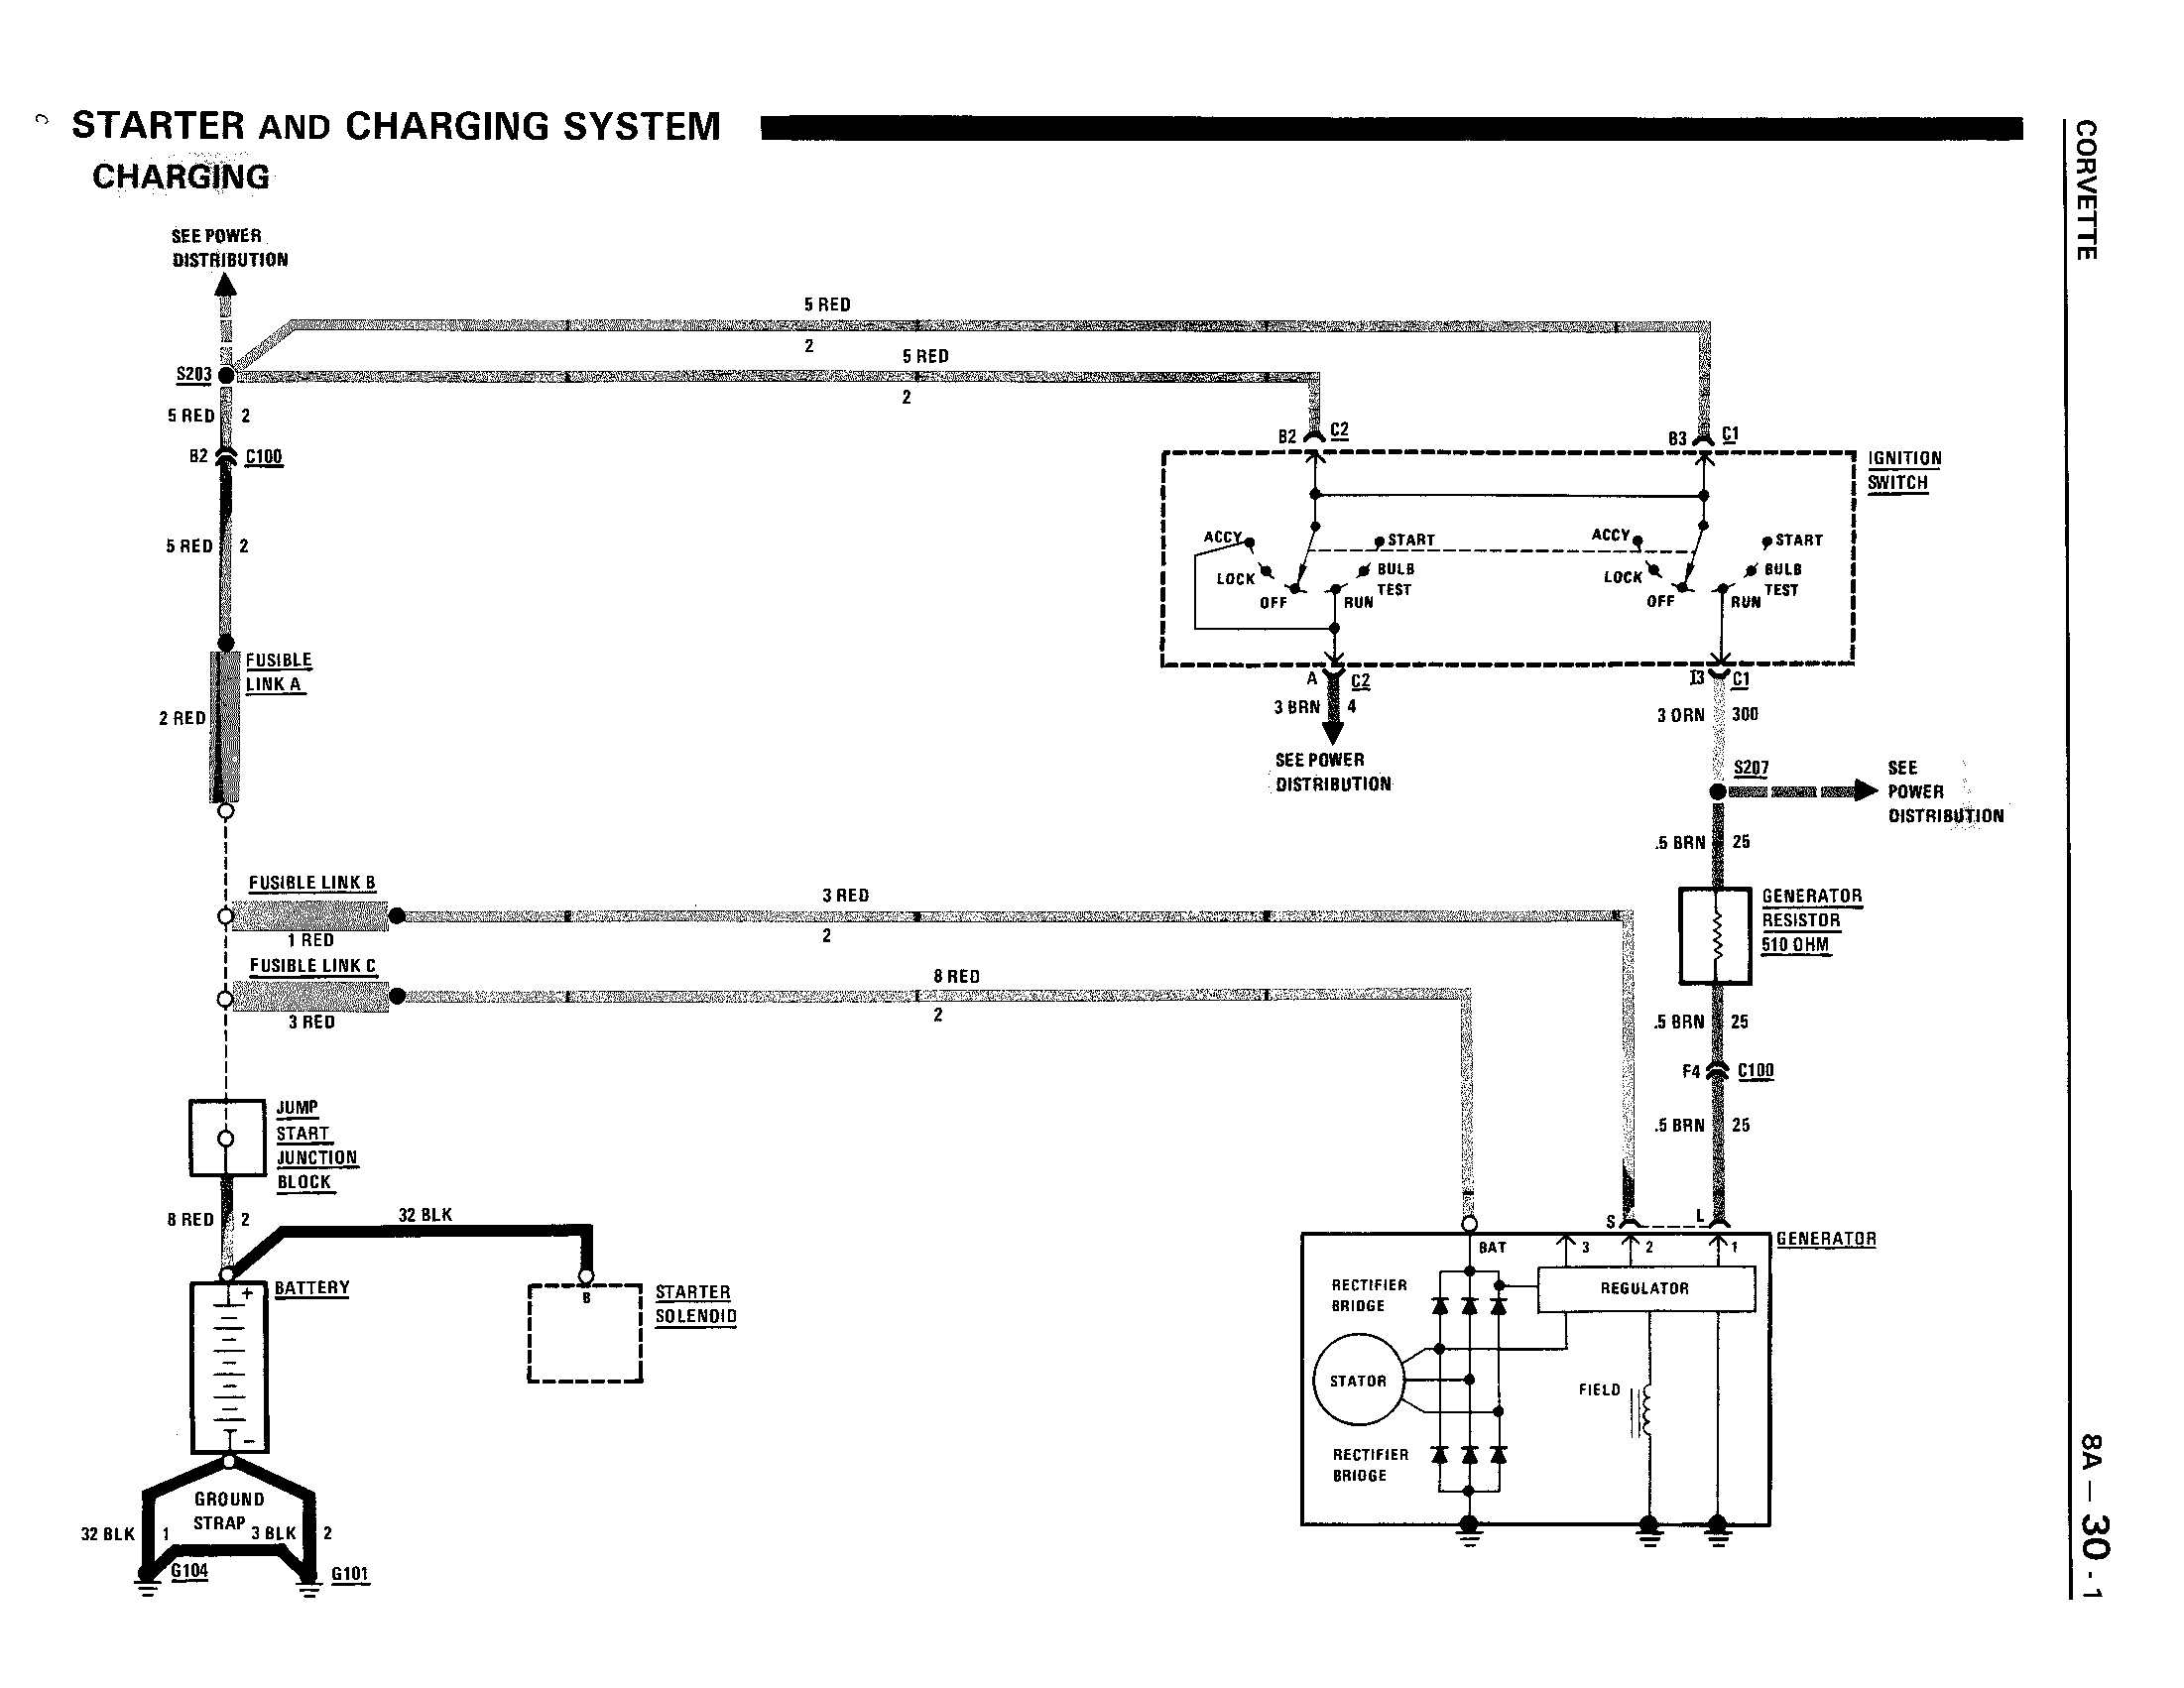 Alternator wiring diagram - CorvetteForum - Chevrolet Corvette Forum  Discussion 87 Corvette Wiring Diagram Corvette Forum